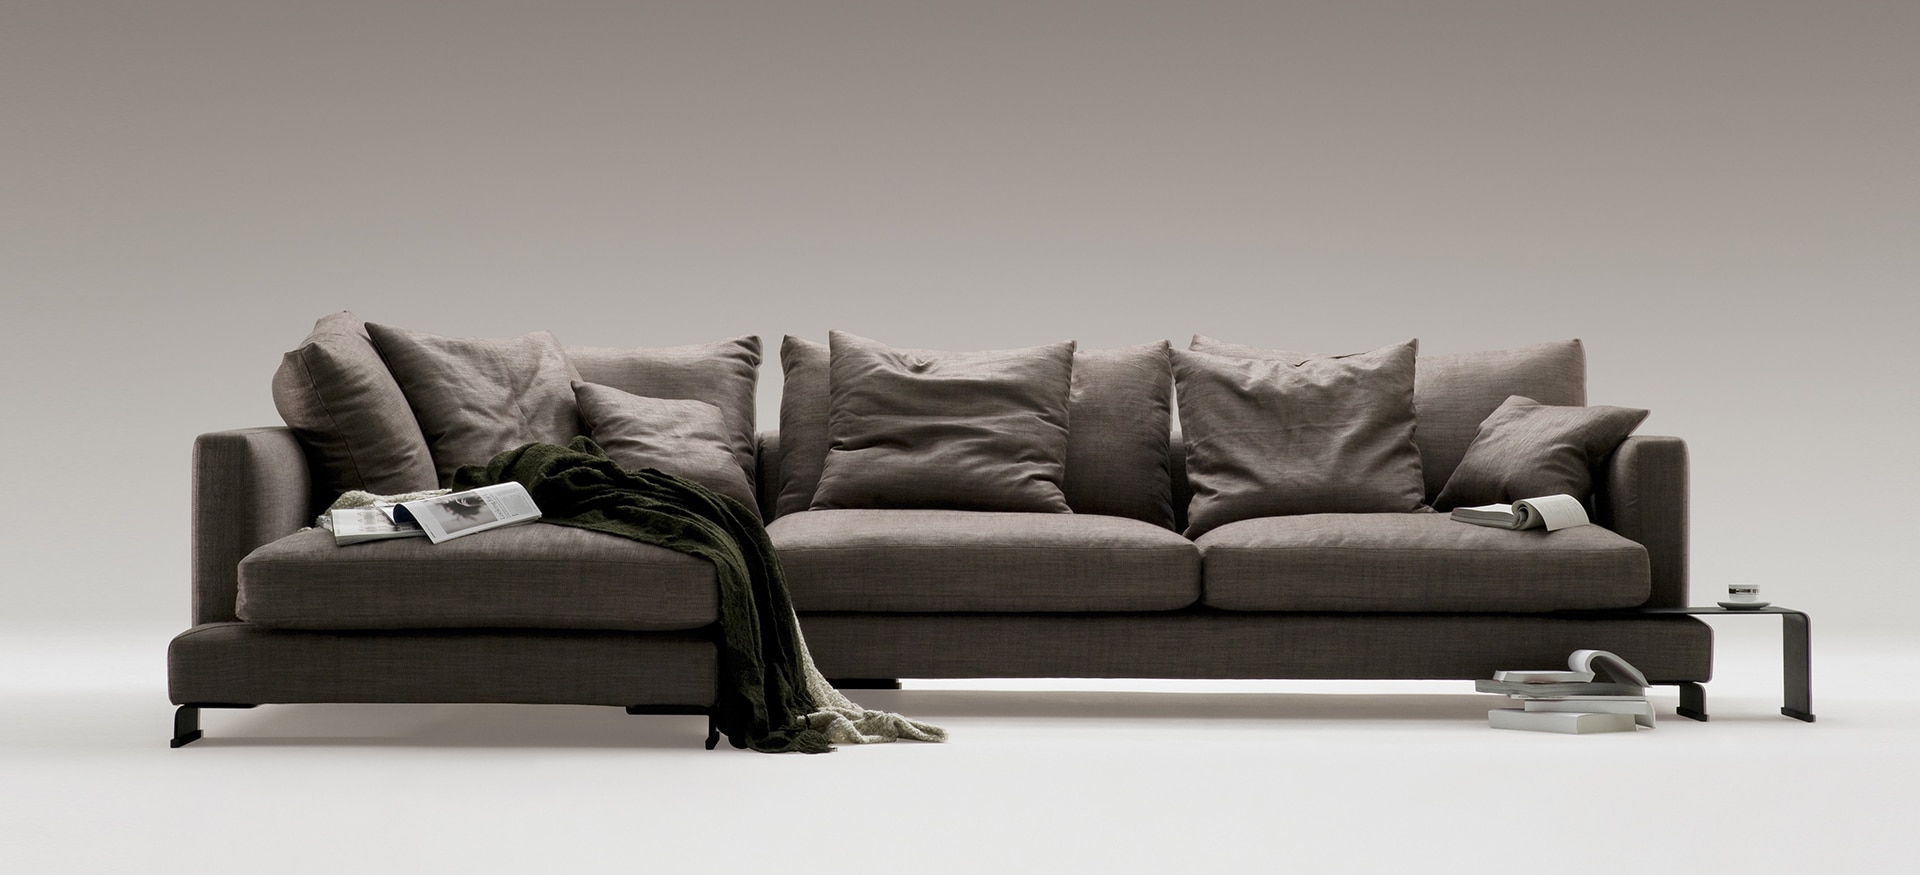 LazyTime Sofa | Camerich USA